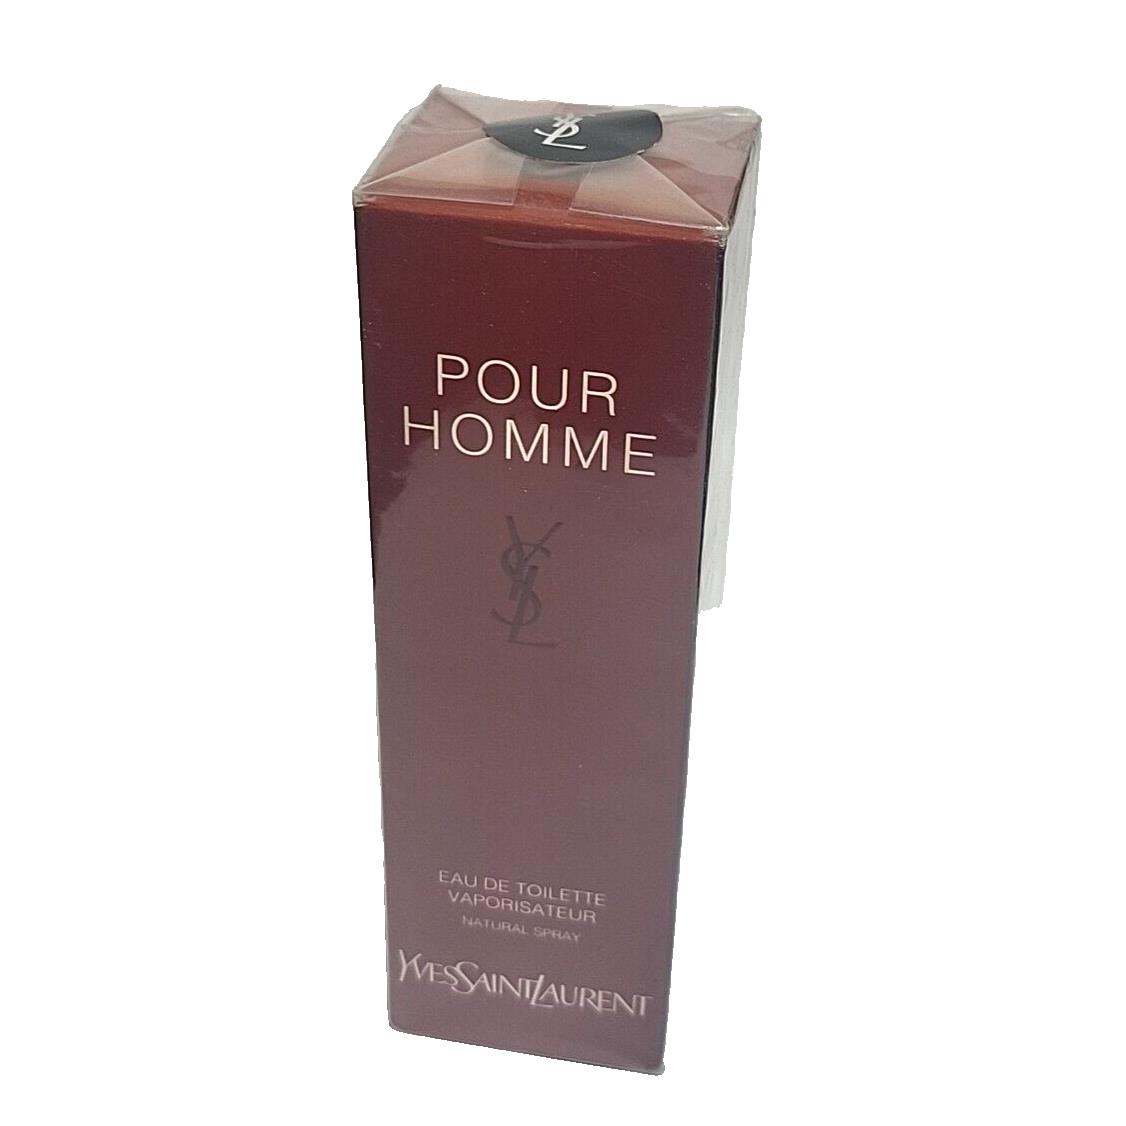 Yves Saint Laurent Pour Homme Ysl 1.6 oz Eau de Toilette Spray Retail Box Made In France